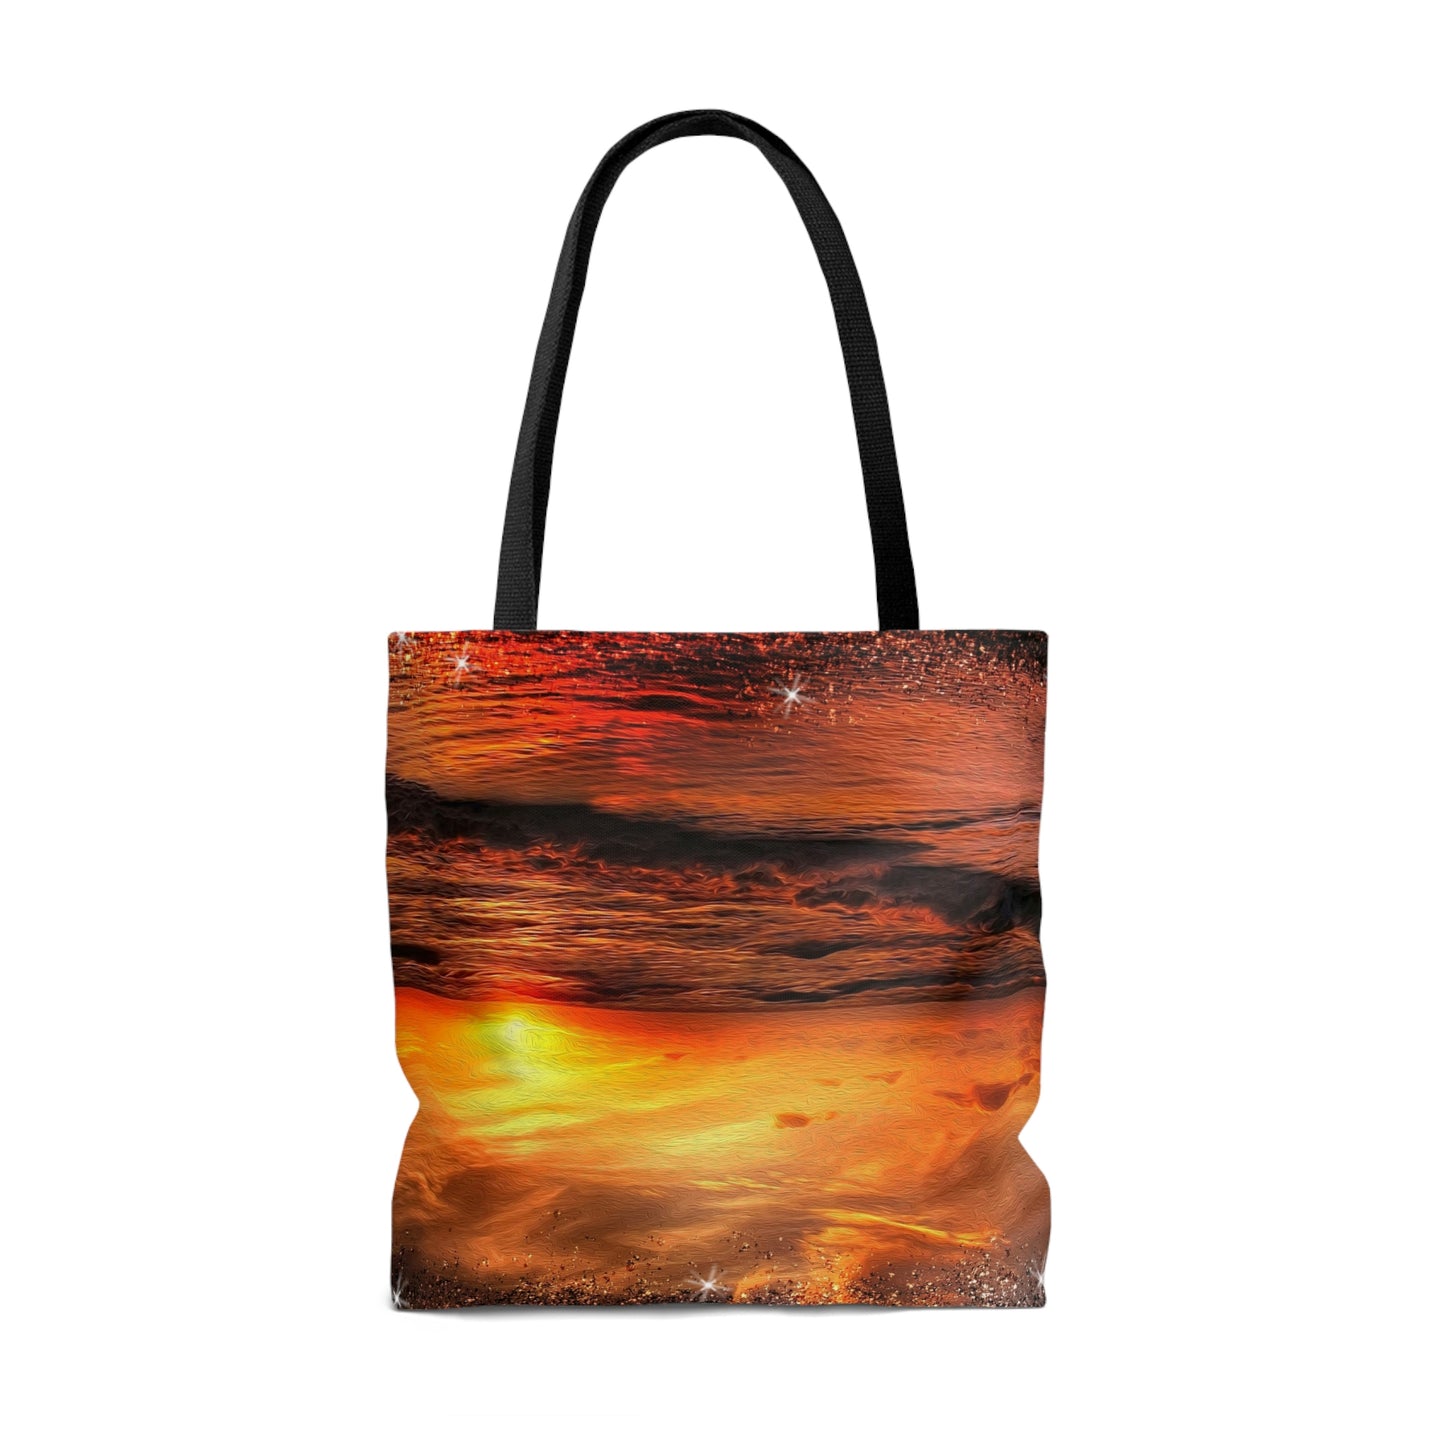 Sunsets Canvas Tote Bag, Beach Bag, Weekender Shoulder Bag, Canvas Tote Bag